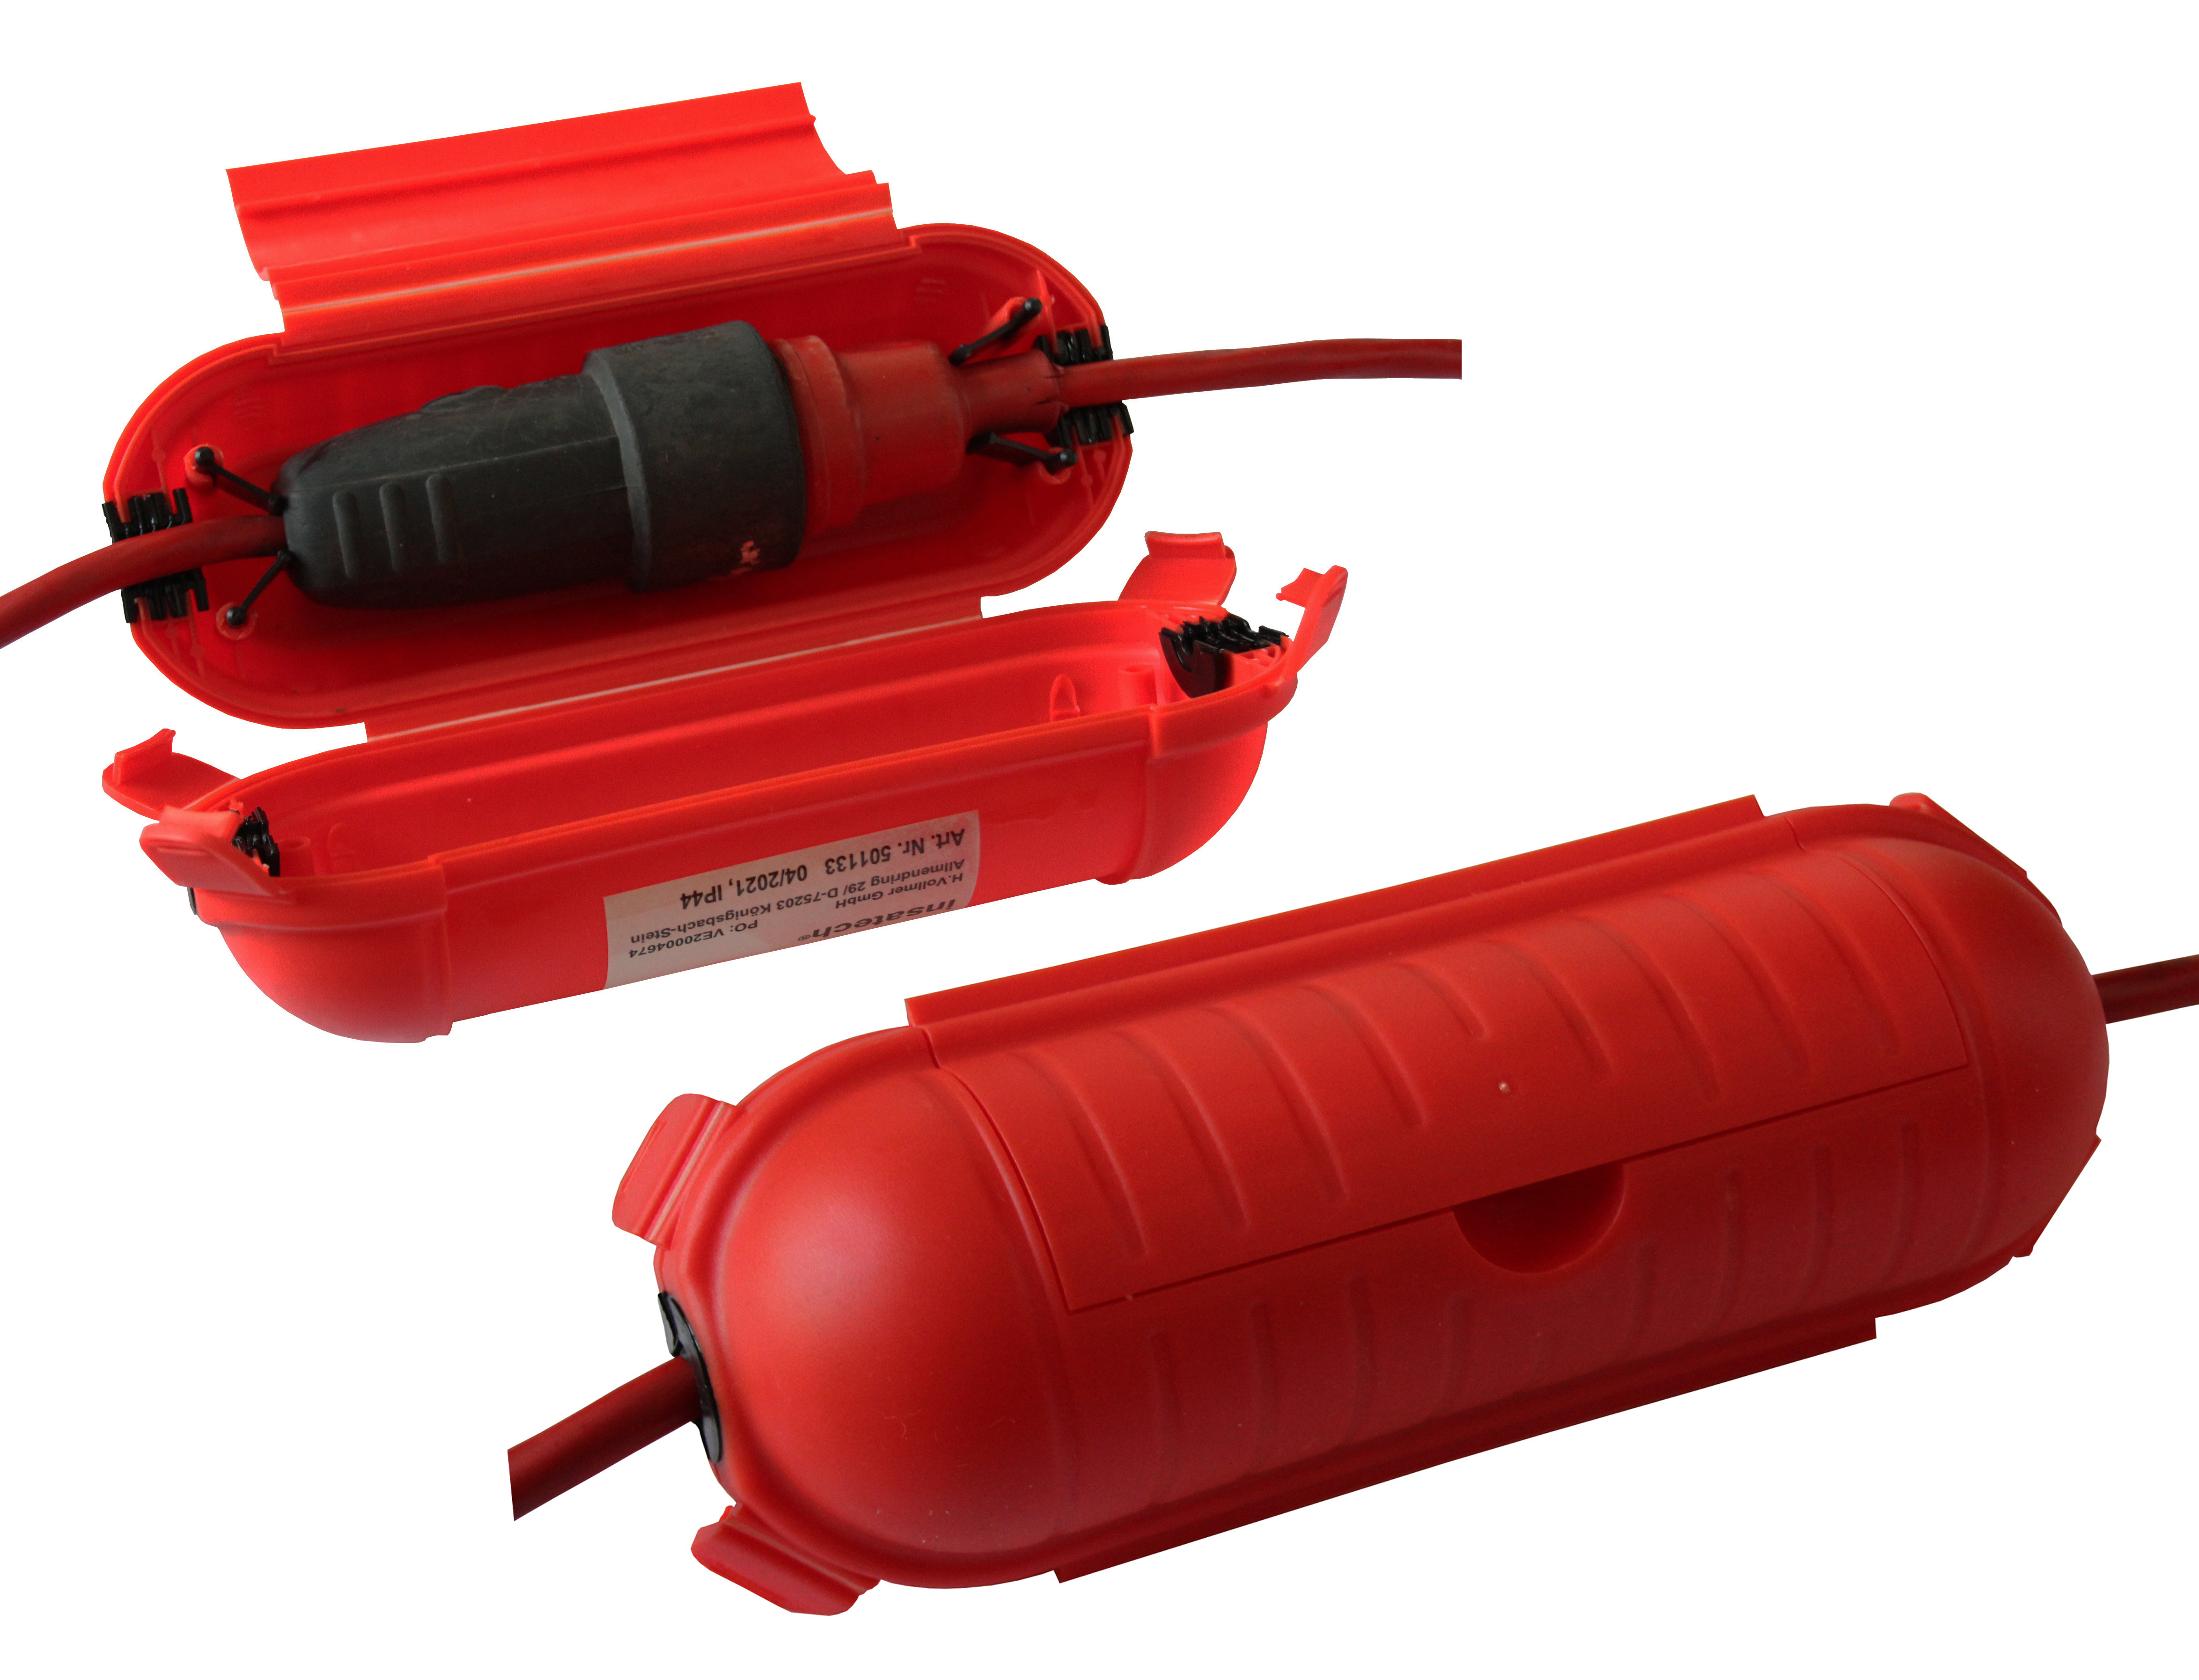 SAFEBOX rot - Schutzbox für Kabelverbindung innen und außen gegen versehentliches Trennen